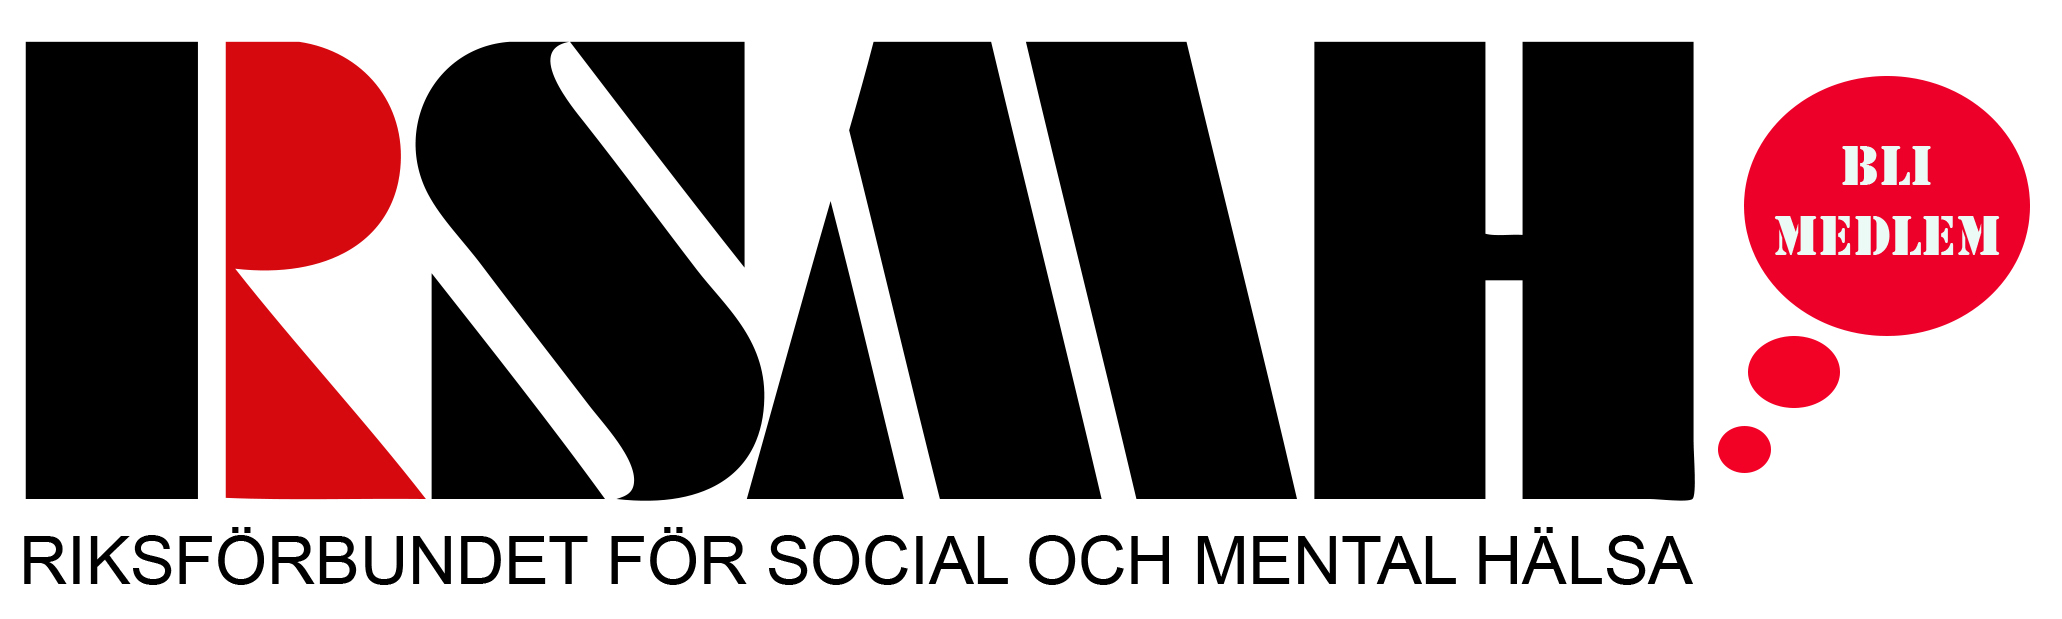 RSMH söker Personligt Ombud Unga (75-100%) till visstidsanställningar i Arvsfondsprojekt 2023-2025